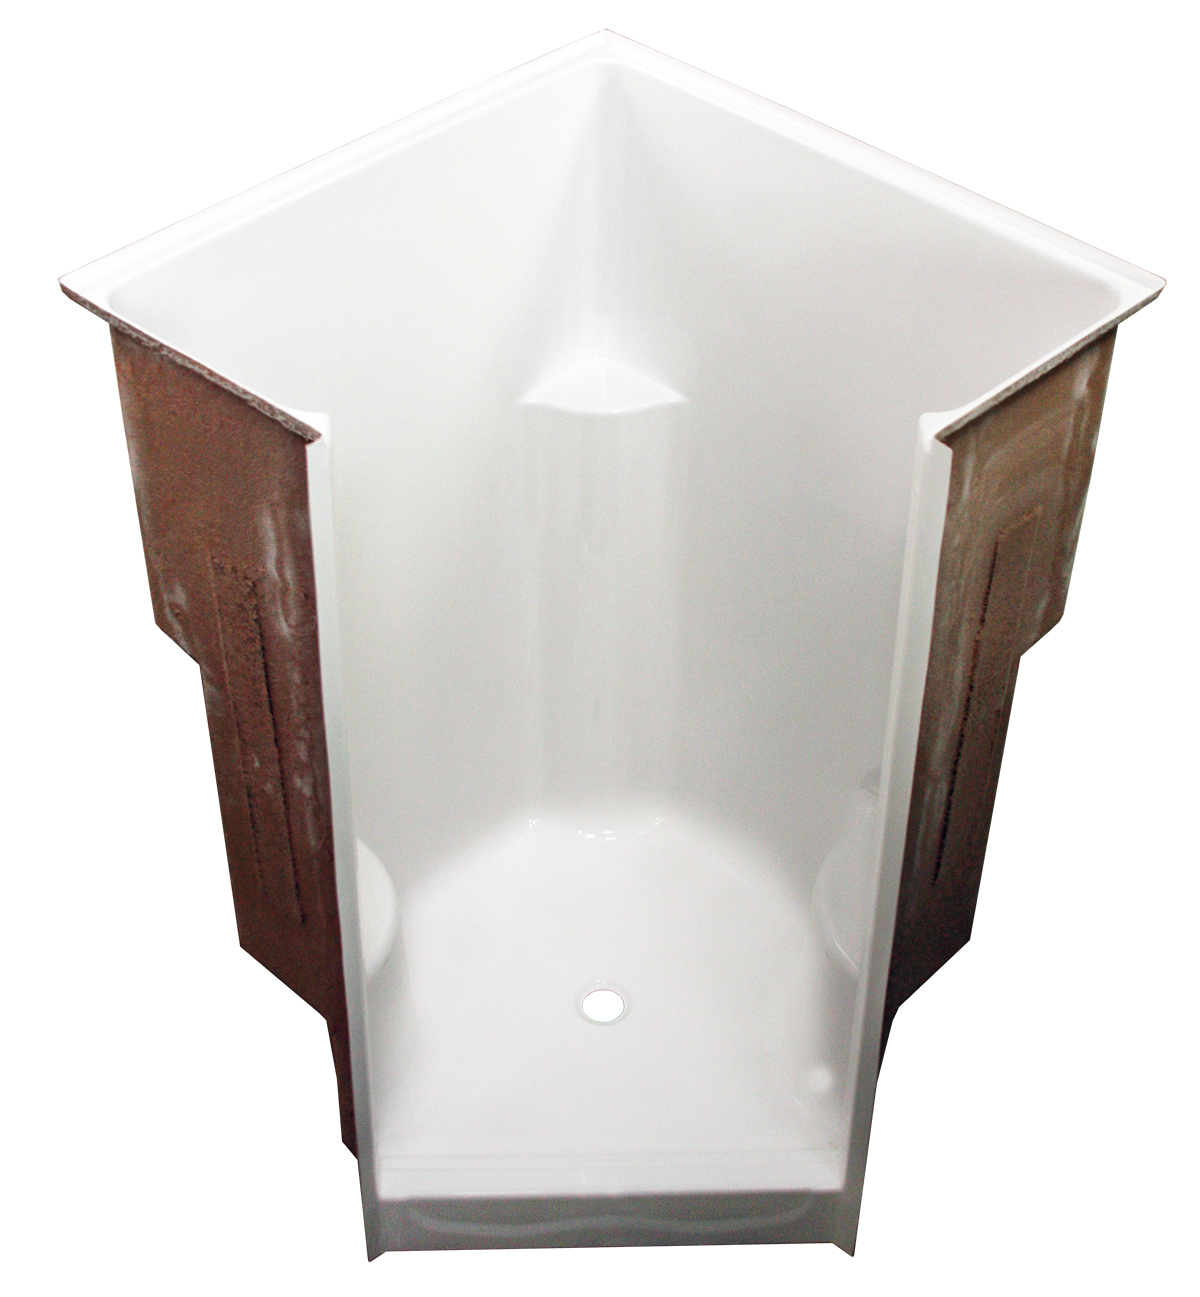 AcrylX Shower 49x49x76-3/4" White With Seats